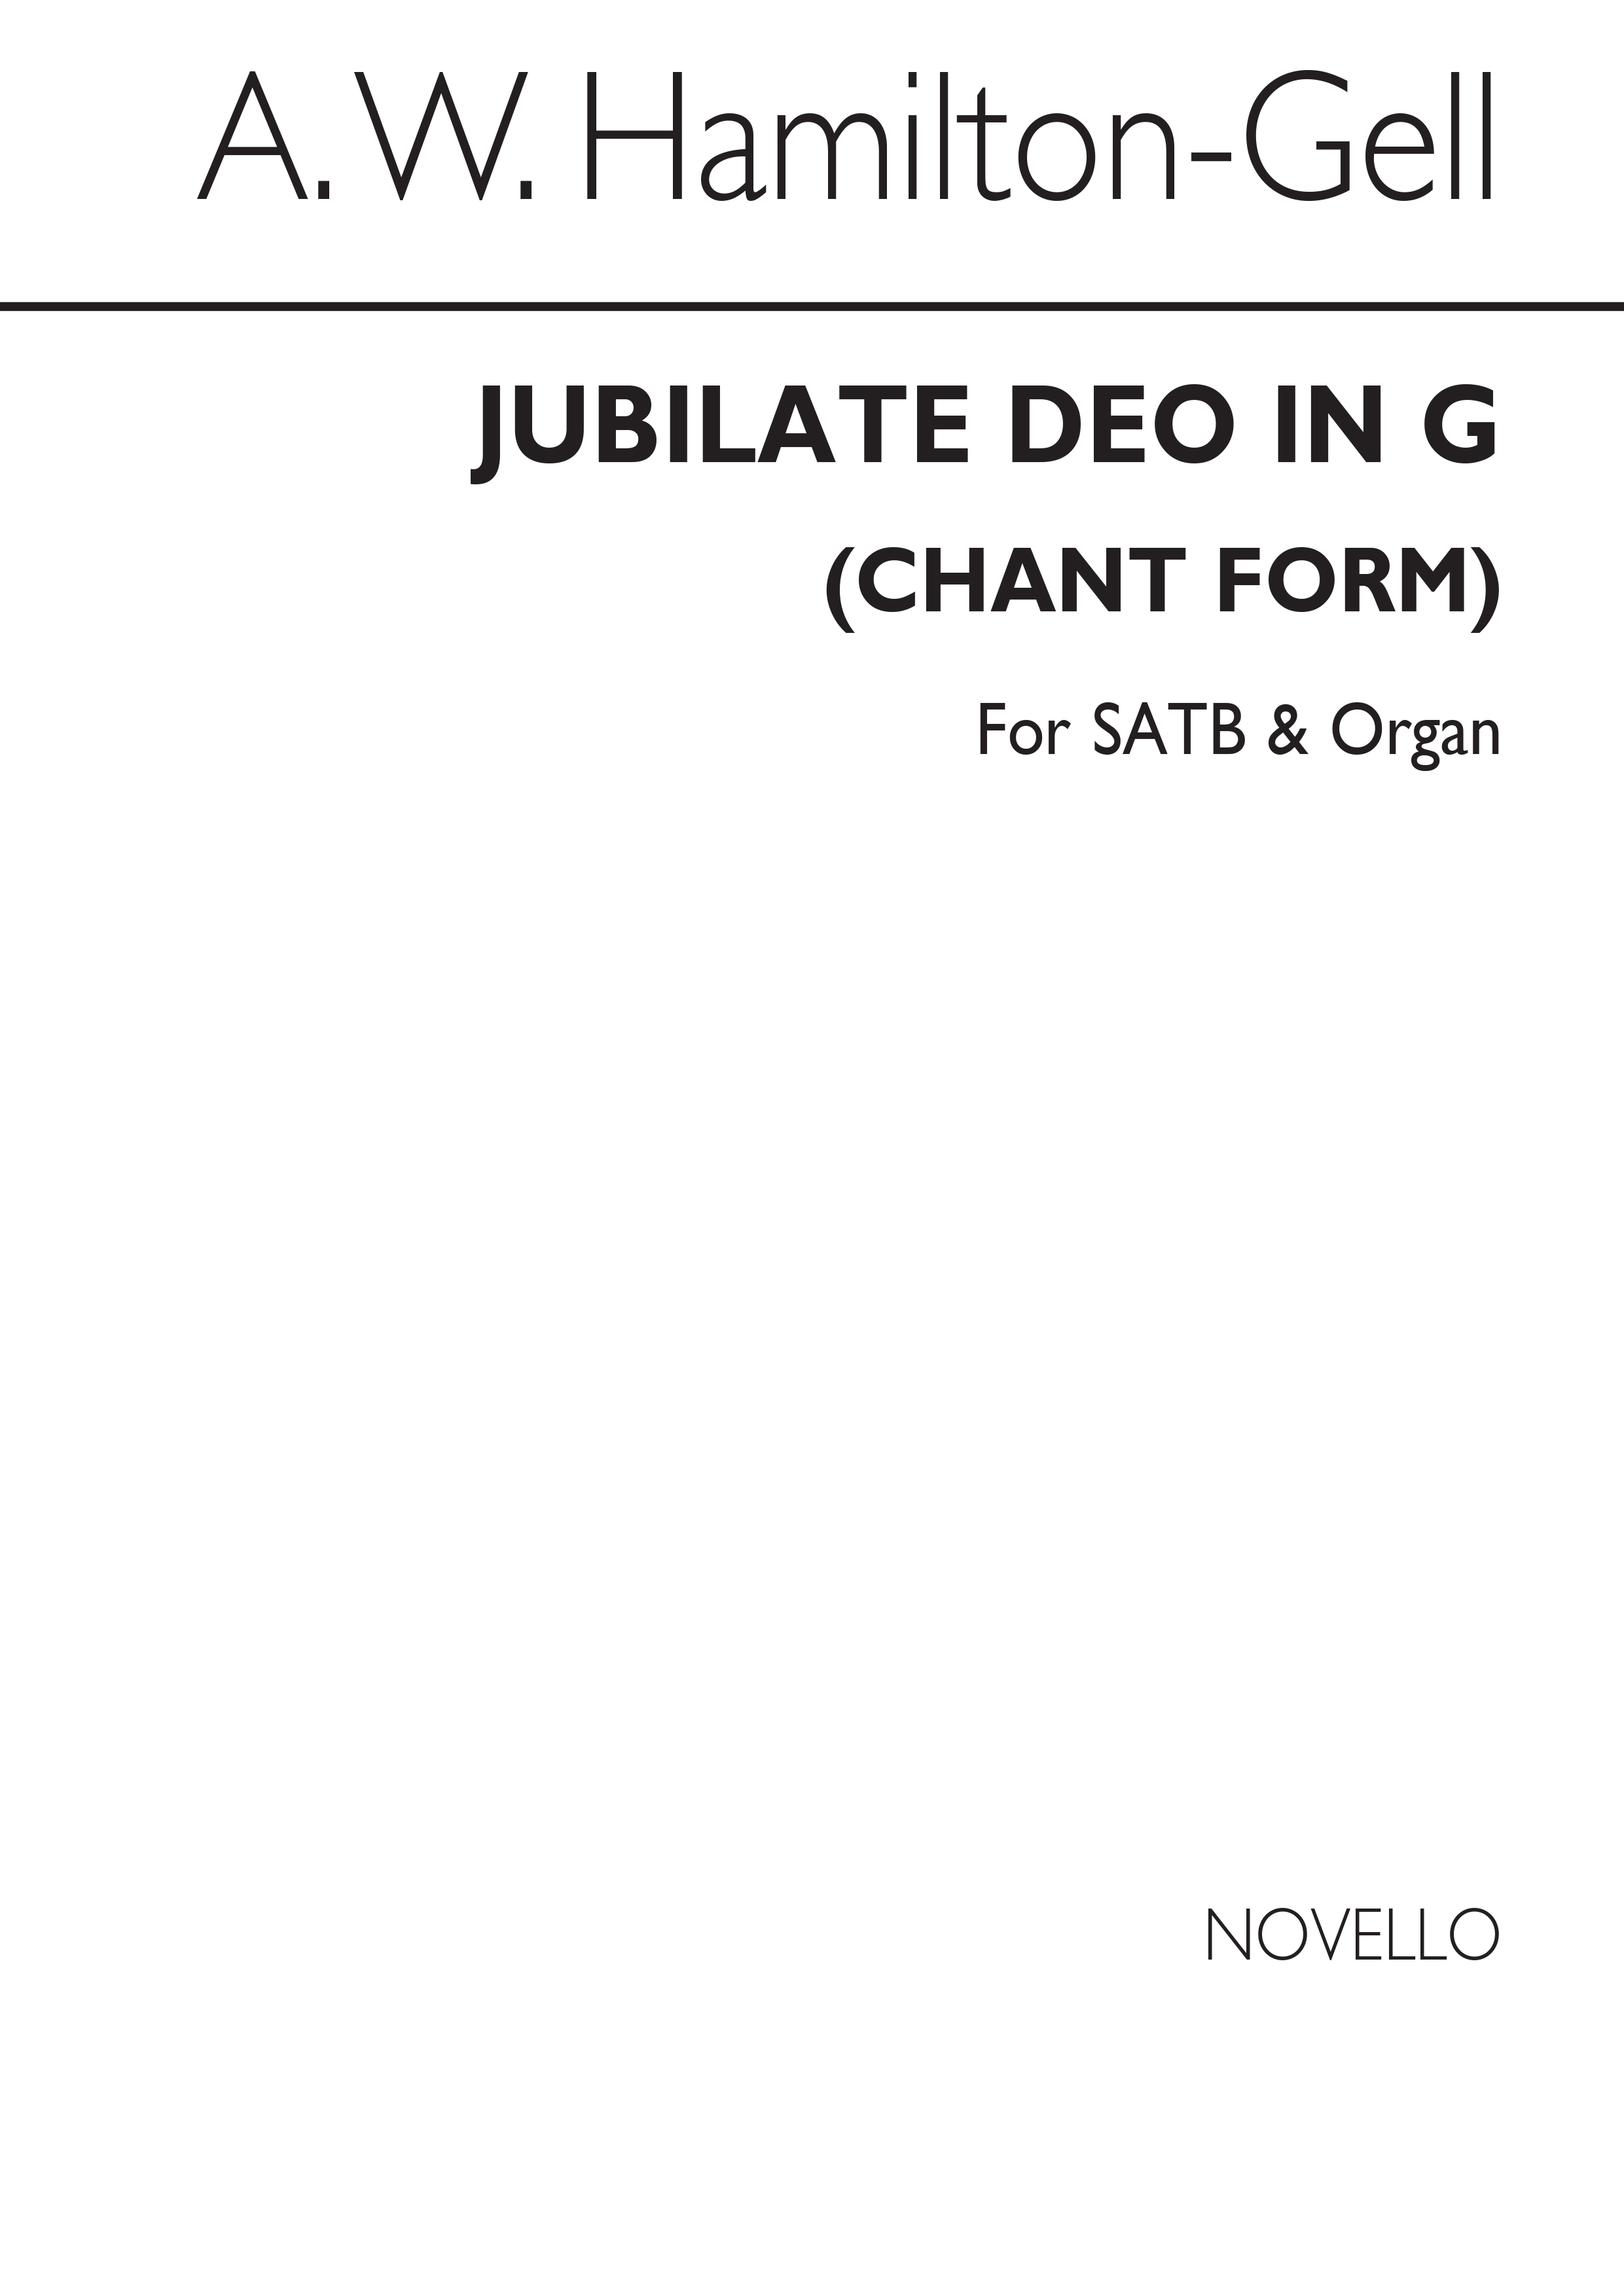 A.W. Hamilton-gell: Jubilate Deo In G (Chant Form) Satb/Organ